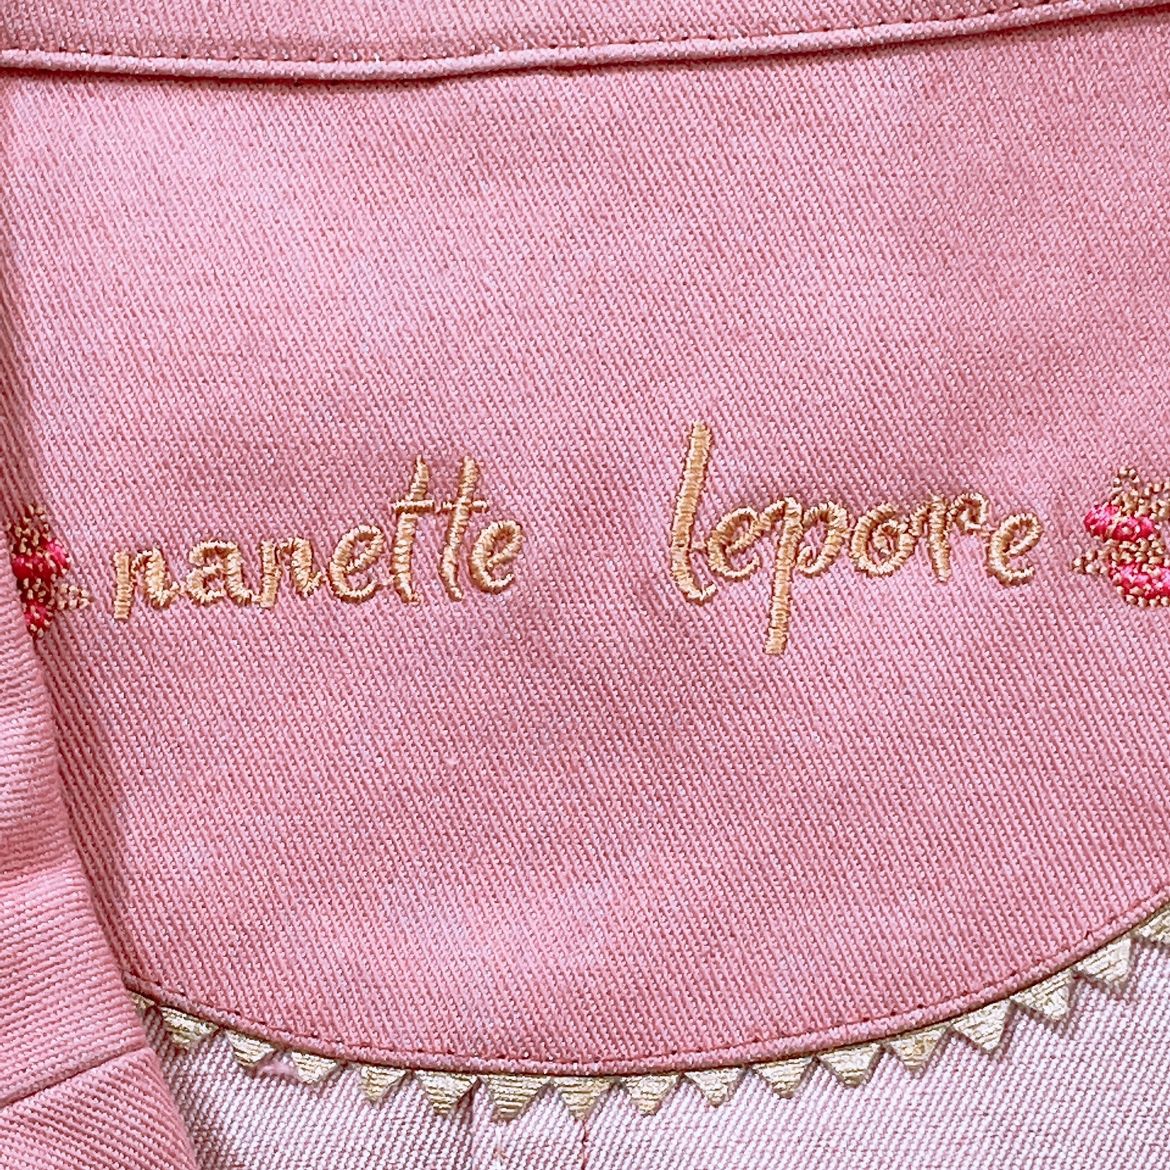 レディース2 nanette lepore ジャケット ピンク バラ ボタン ベルト有 オシャレ かわいい ナネットレポー 【21297】